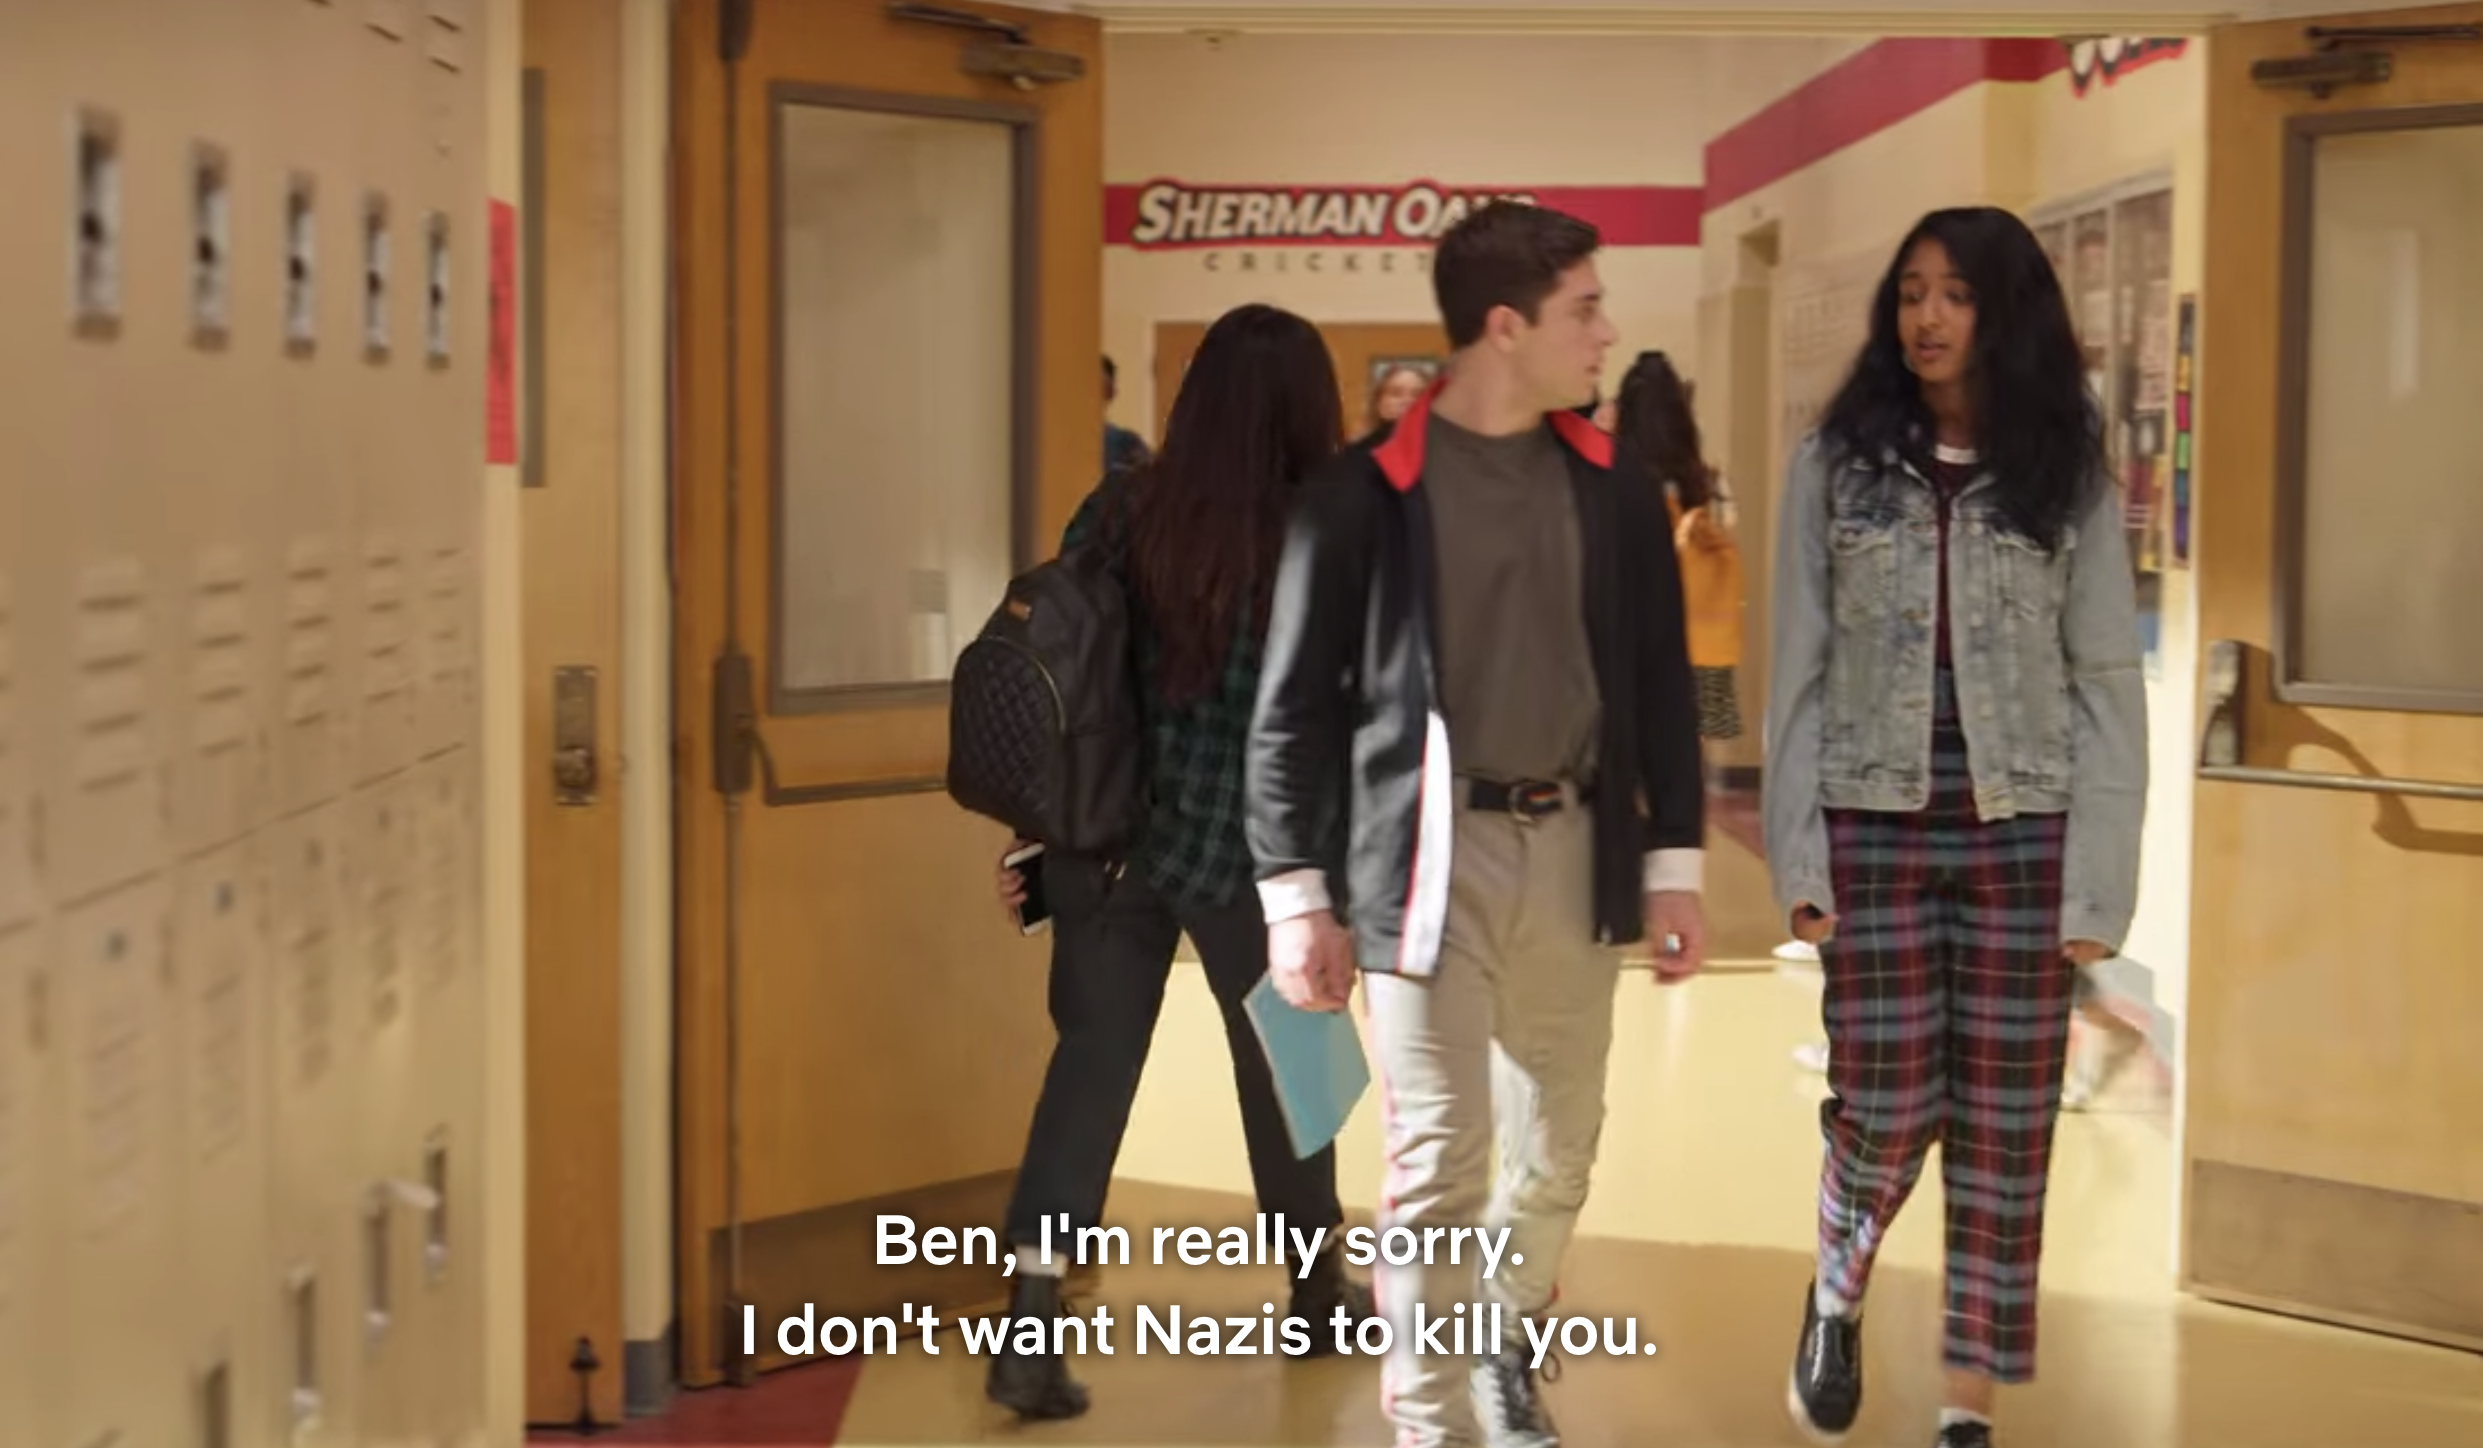 Devi: "Ben, I'm really sorry. I don't want Nazis to kill you."